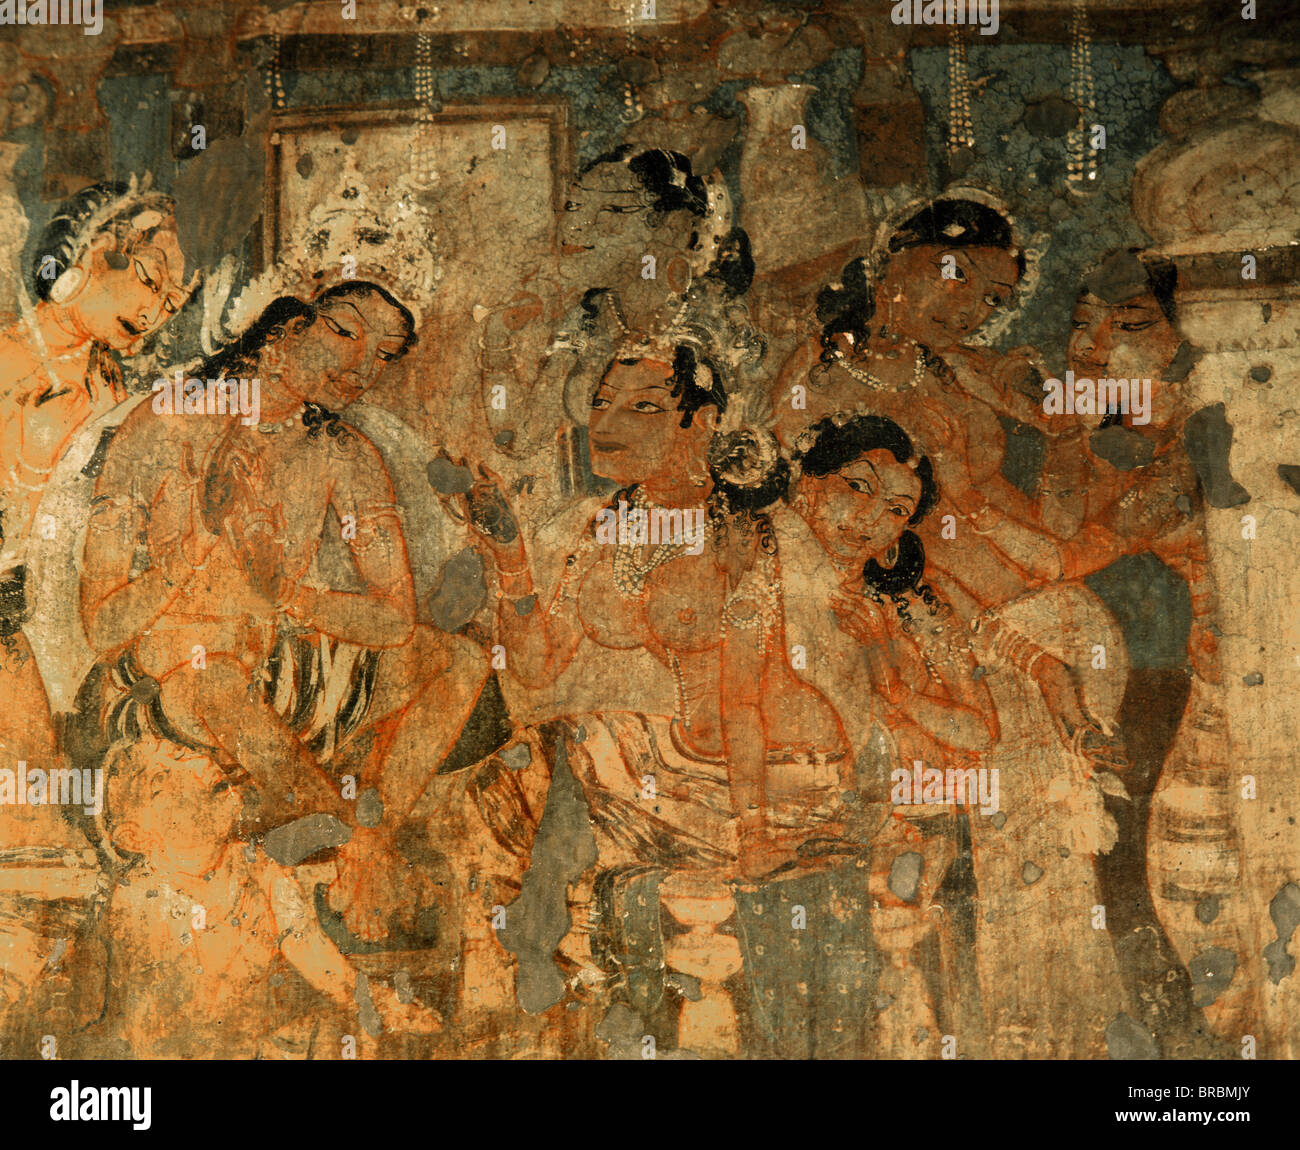 Dettaglio del Murale che raffigura il re e la regina, all'interno della grotta No.1, Ajanta, Sito Patrimonio Mondiale dell'UNESCO, Maharashtra, India Foto Stock